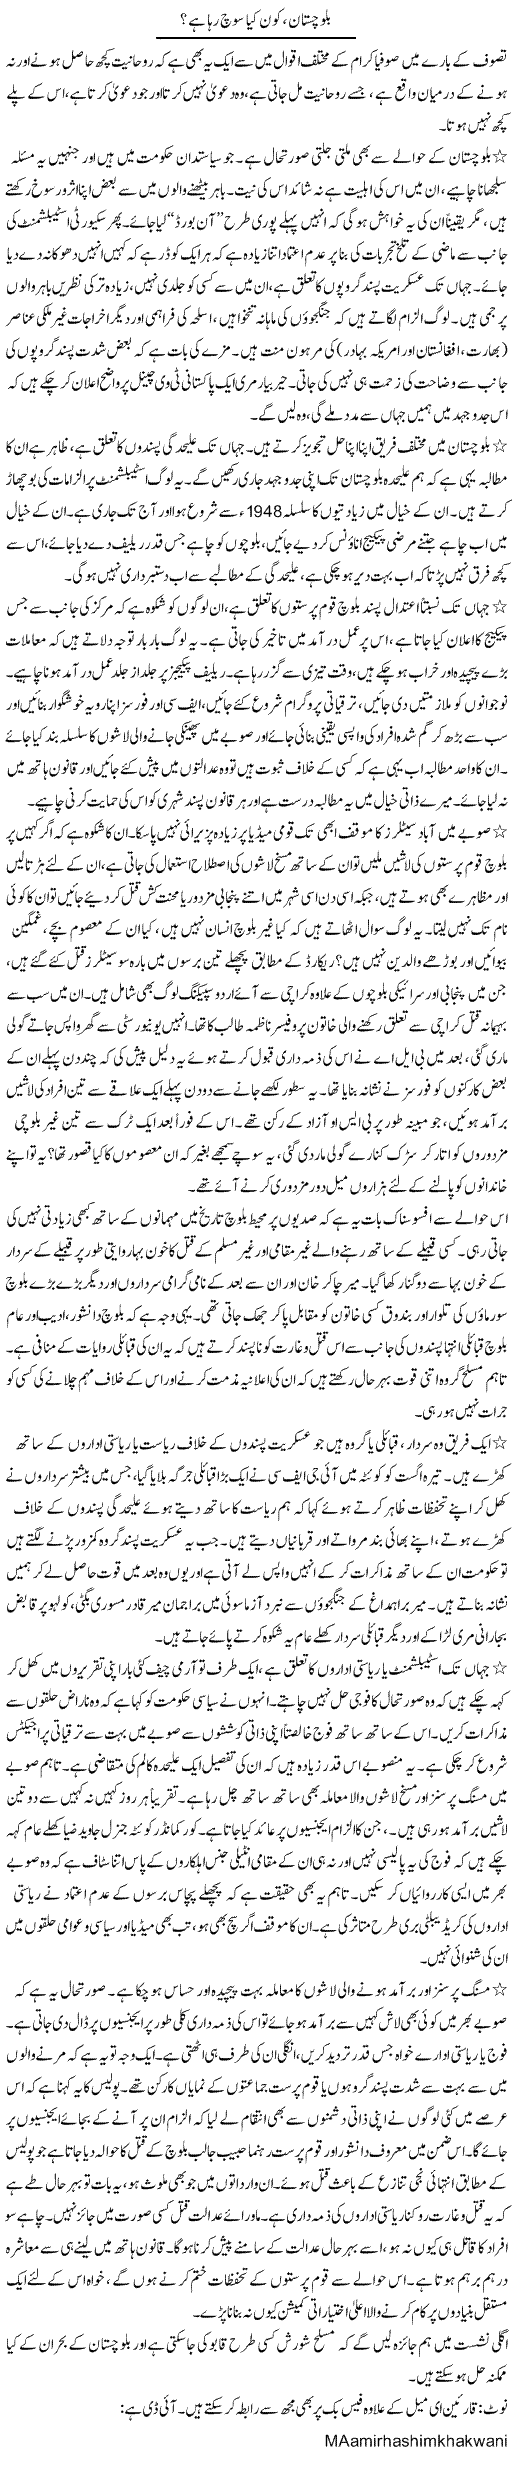 Balochistan Express Column Aamir Khakwani 23 August 2011